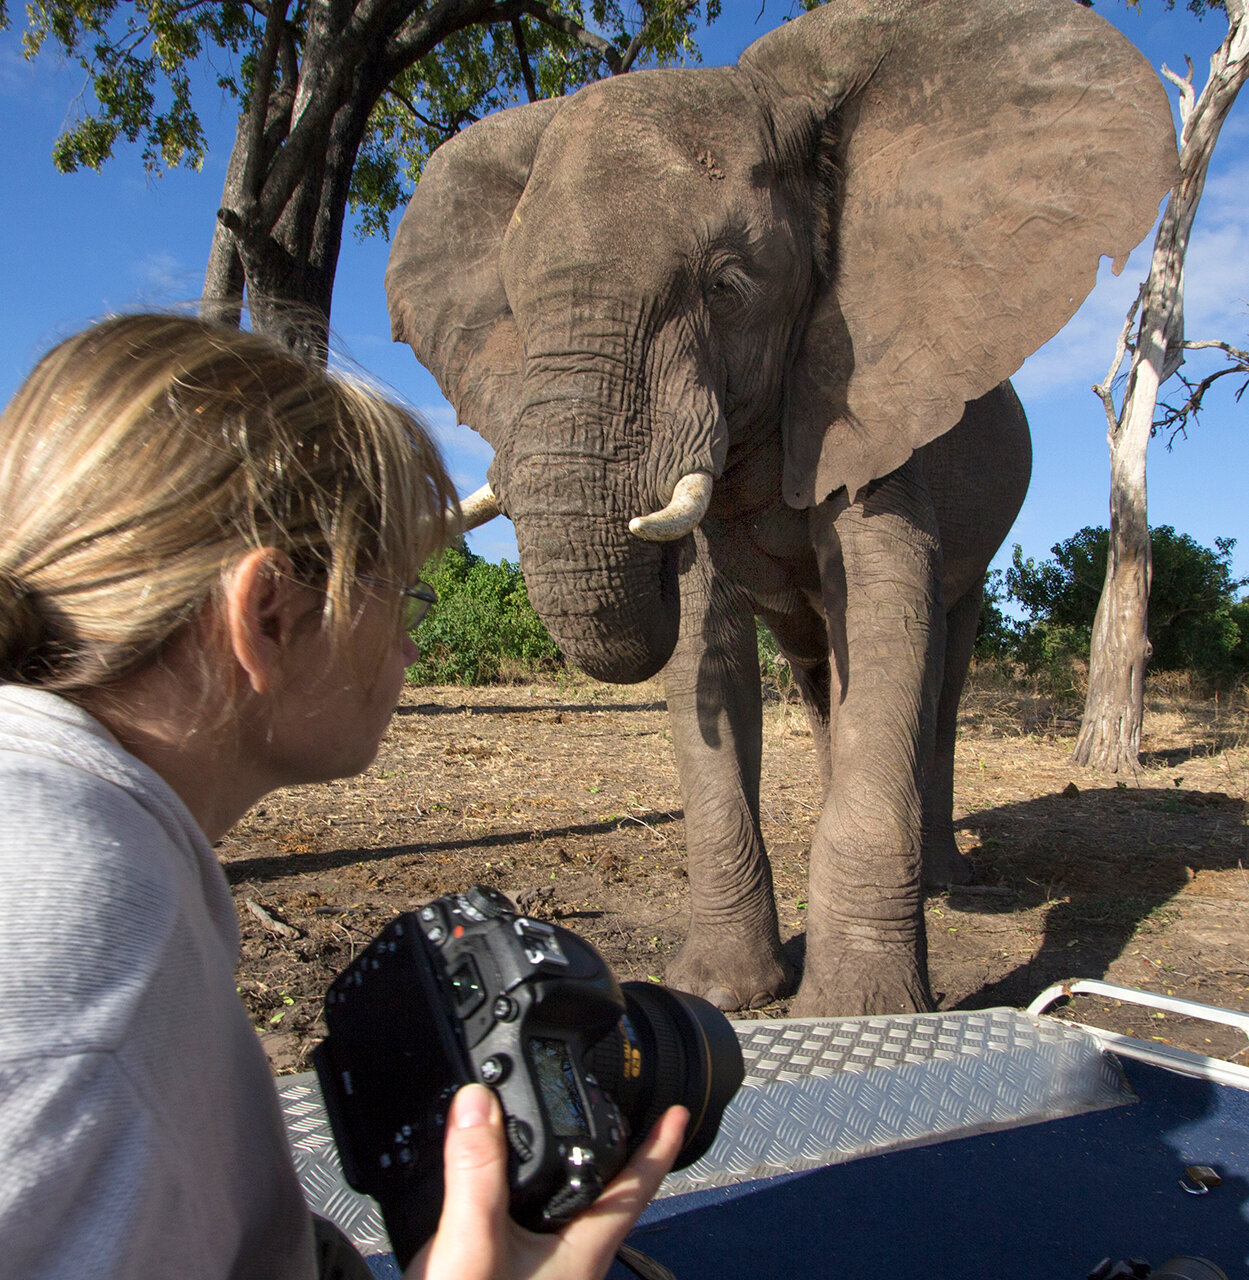  2014 - Shooting elephants in Chobe NP - Botswana.   